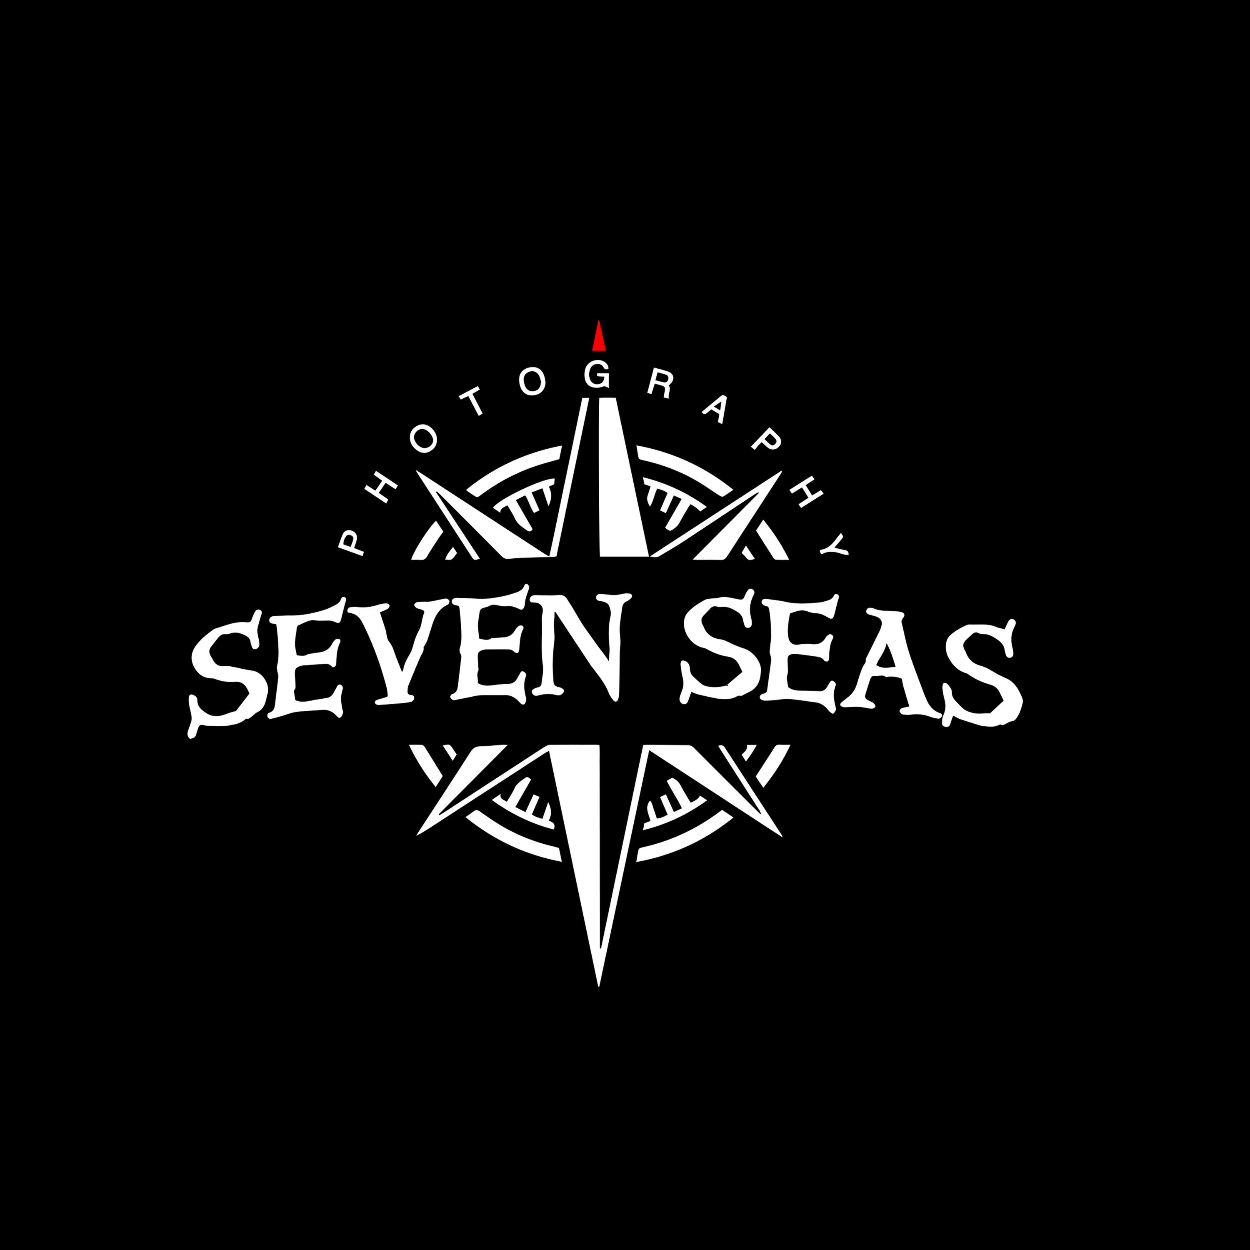 Seven Seas Studios